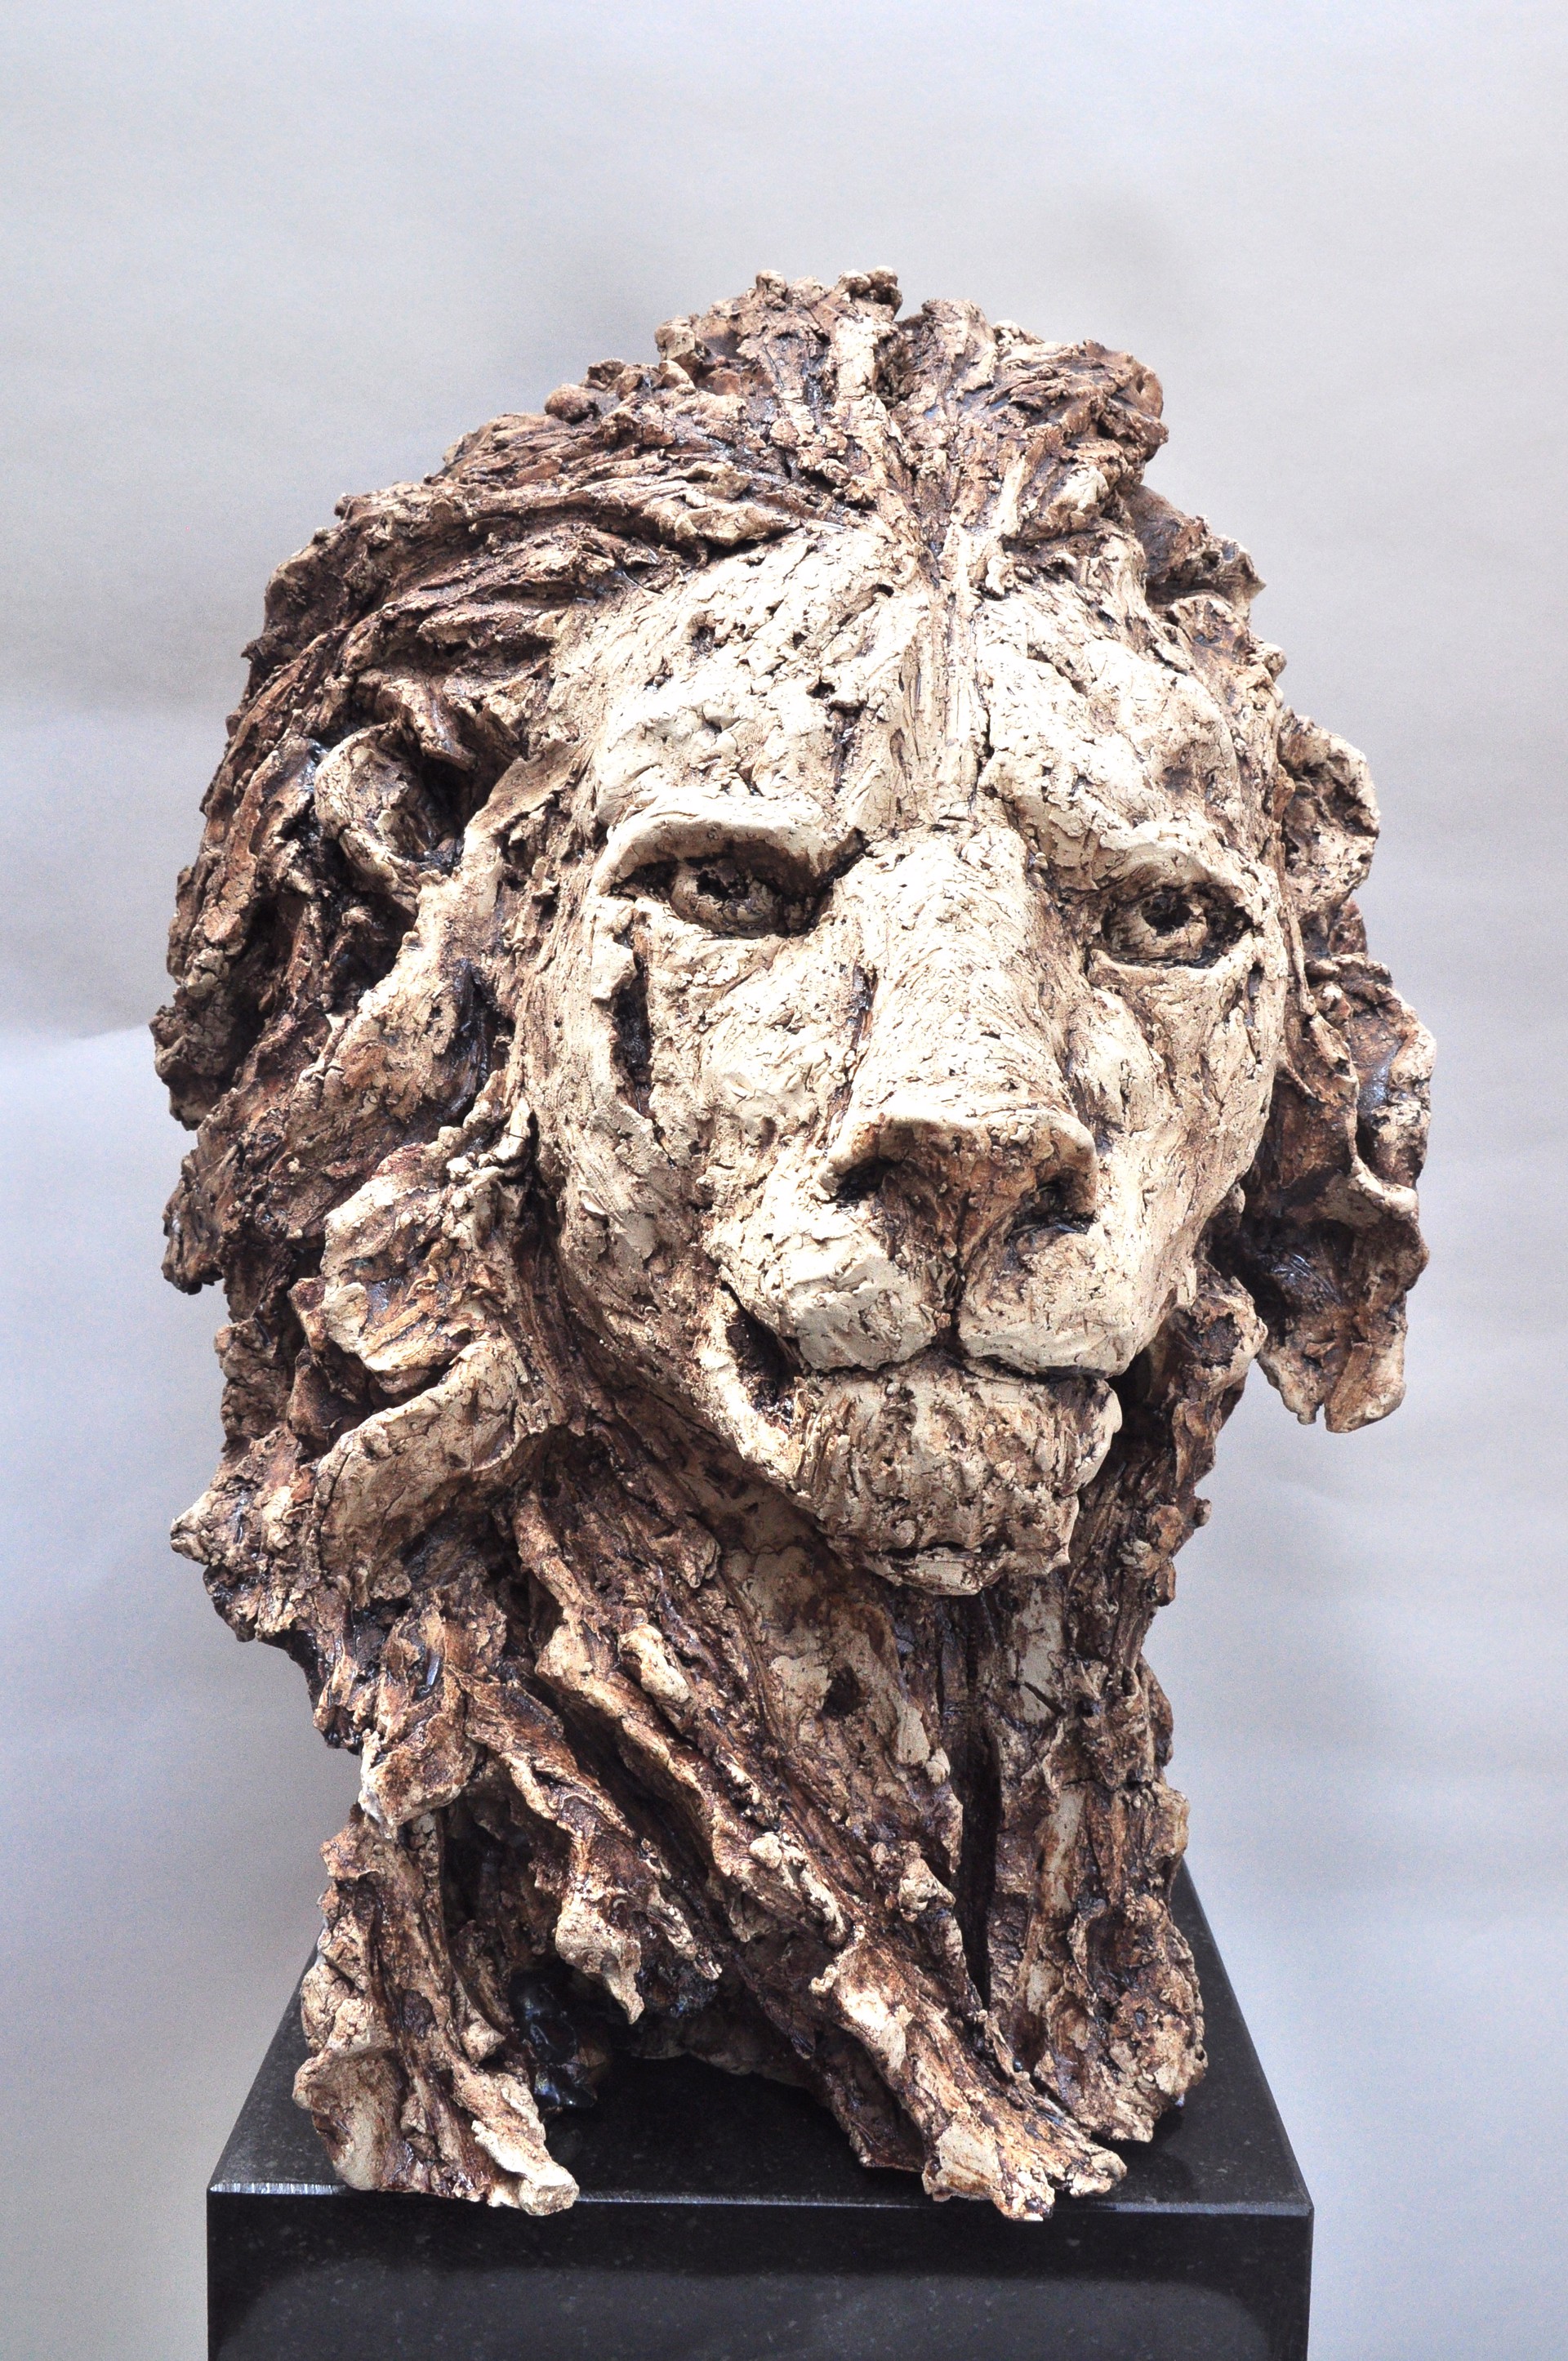 Lion by Rudy Dewaele